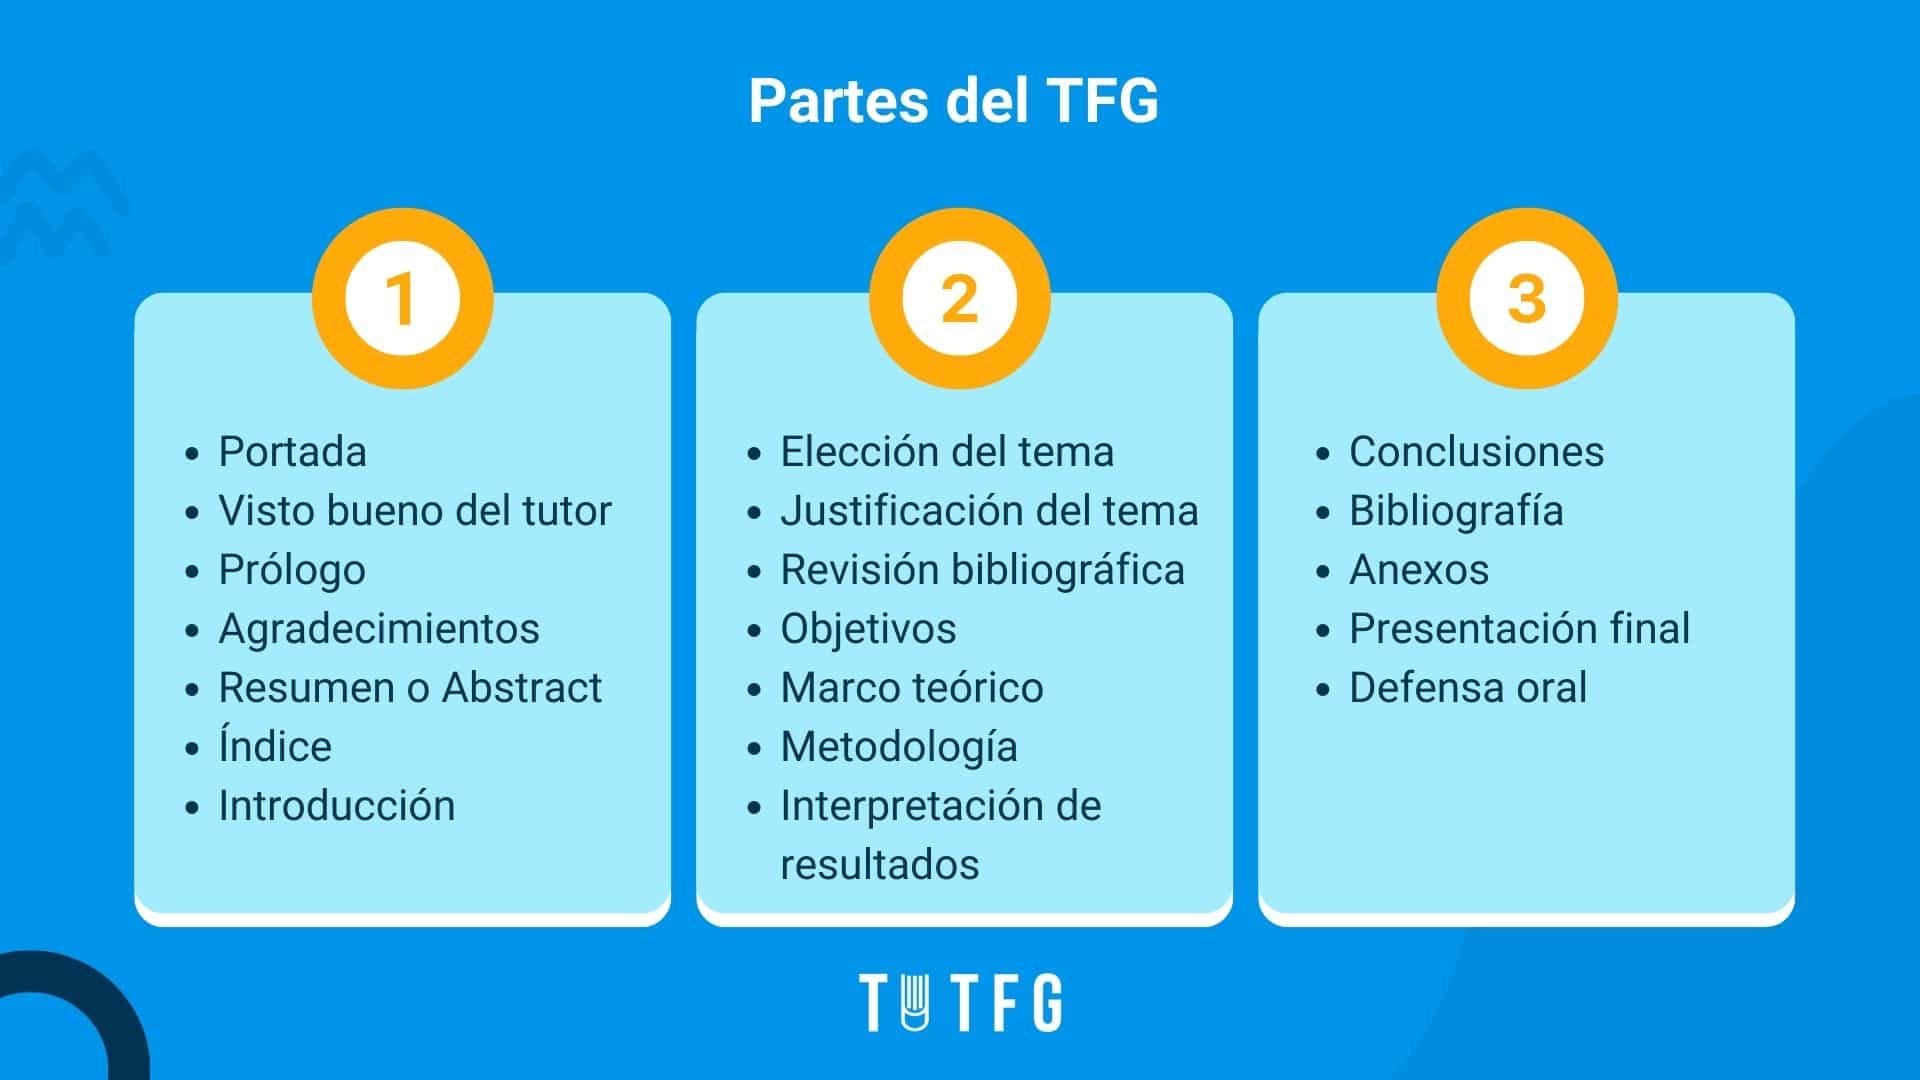 Cómo hacer el marco teórico de un TFG